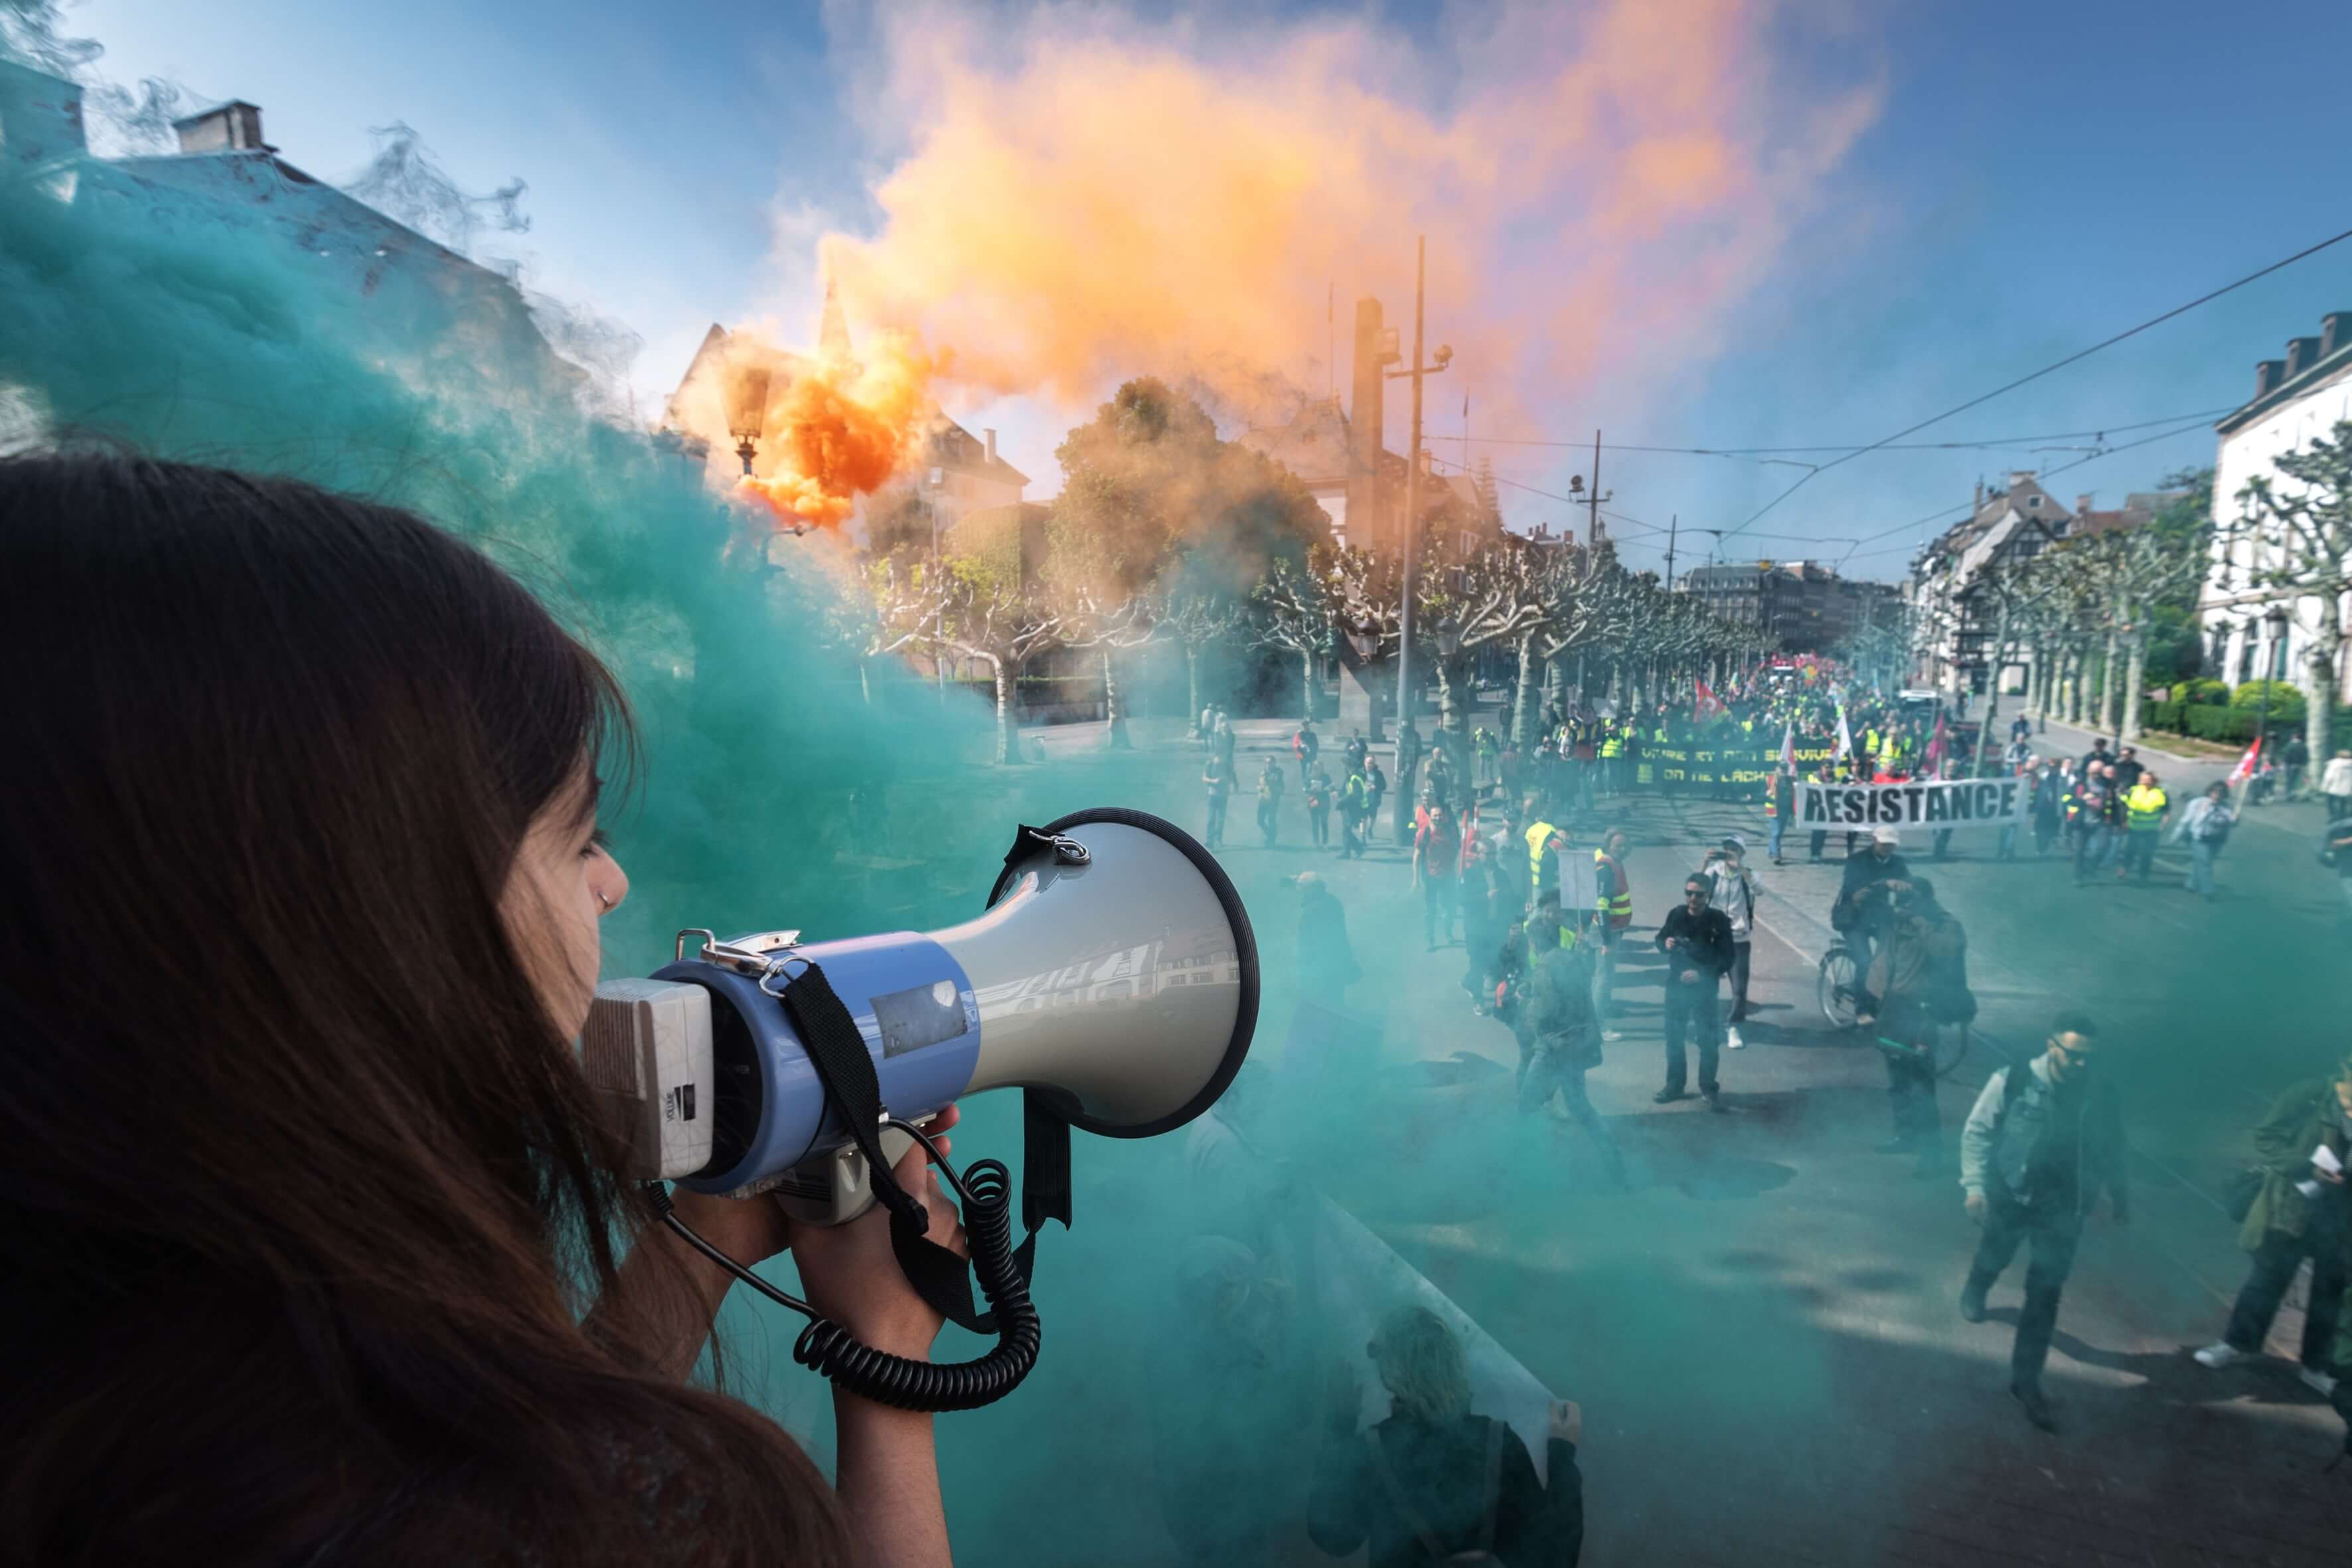 Un manifestant parle à travers un mégaphone alors que la fumée de bombes fumigènes colorées s'élève près des personnes participant au rassemblement annuel du 1er mai à Strasbourg, dans l'est de la France, le 1er mai 2019.